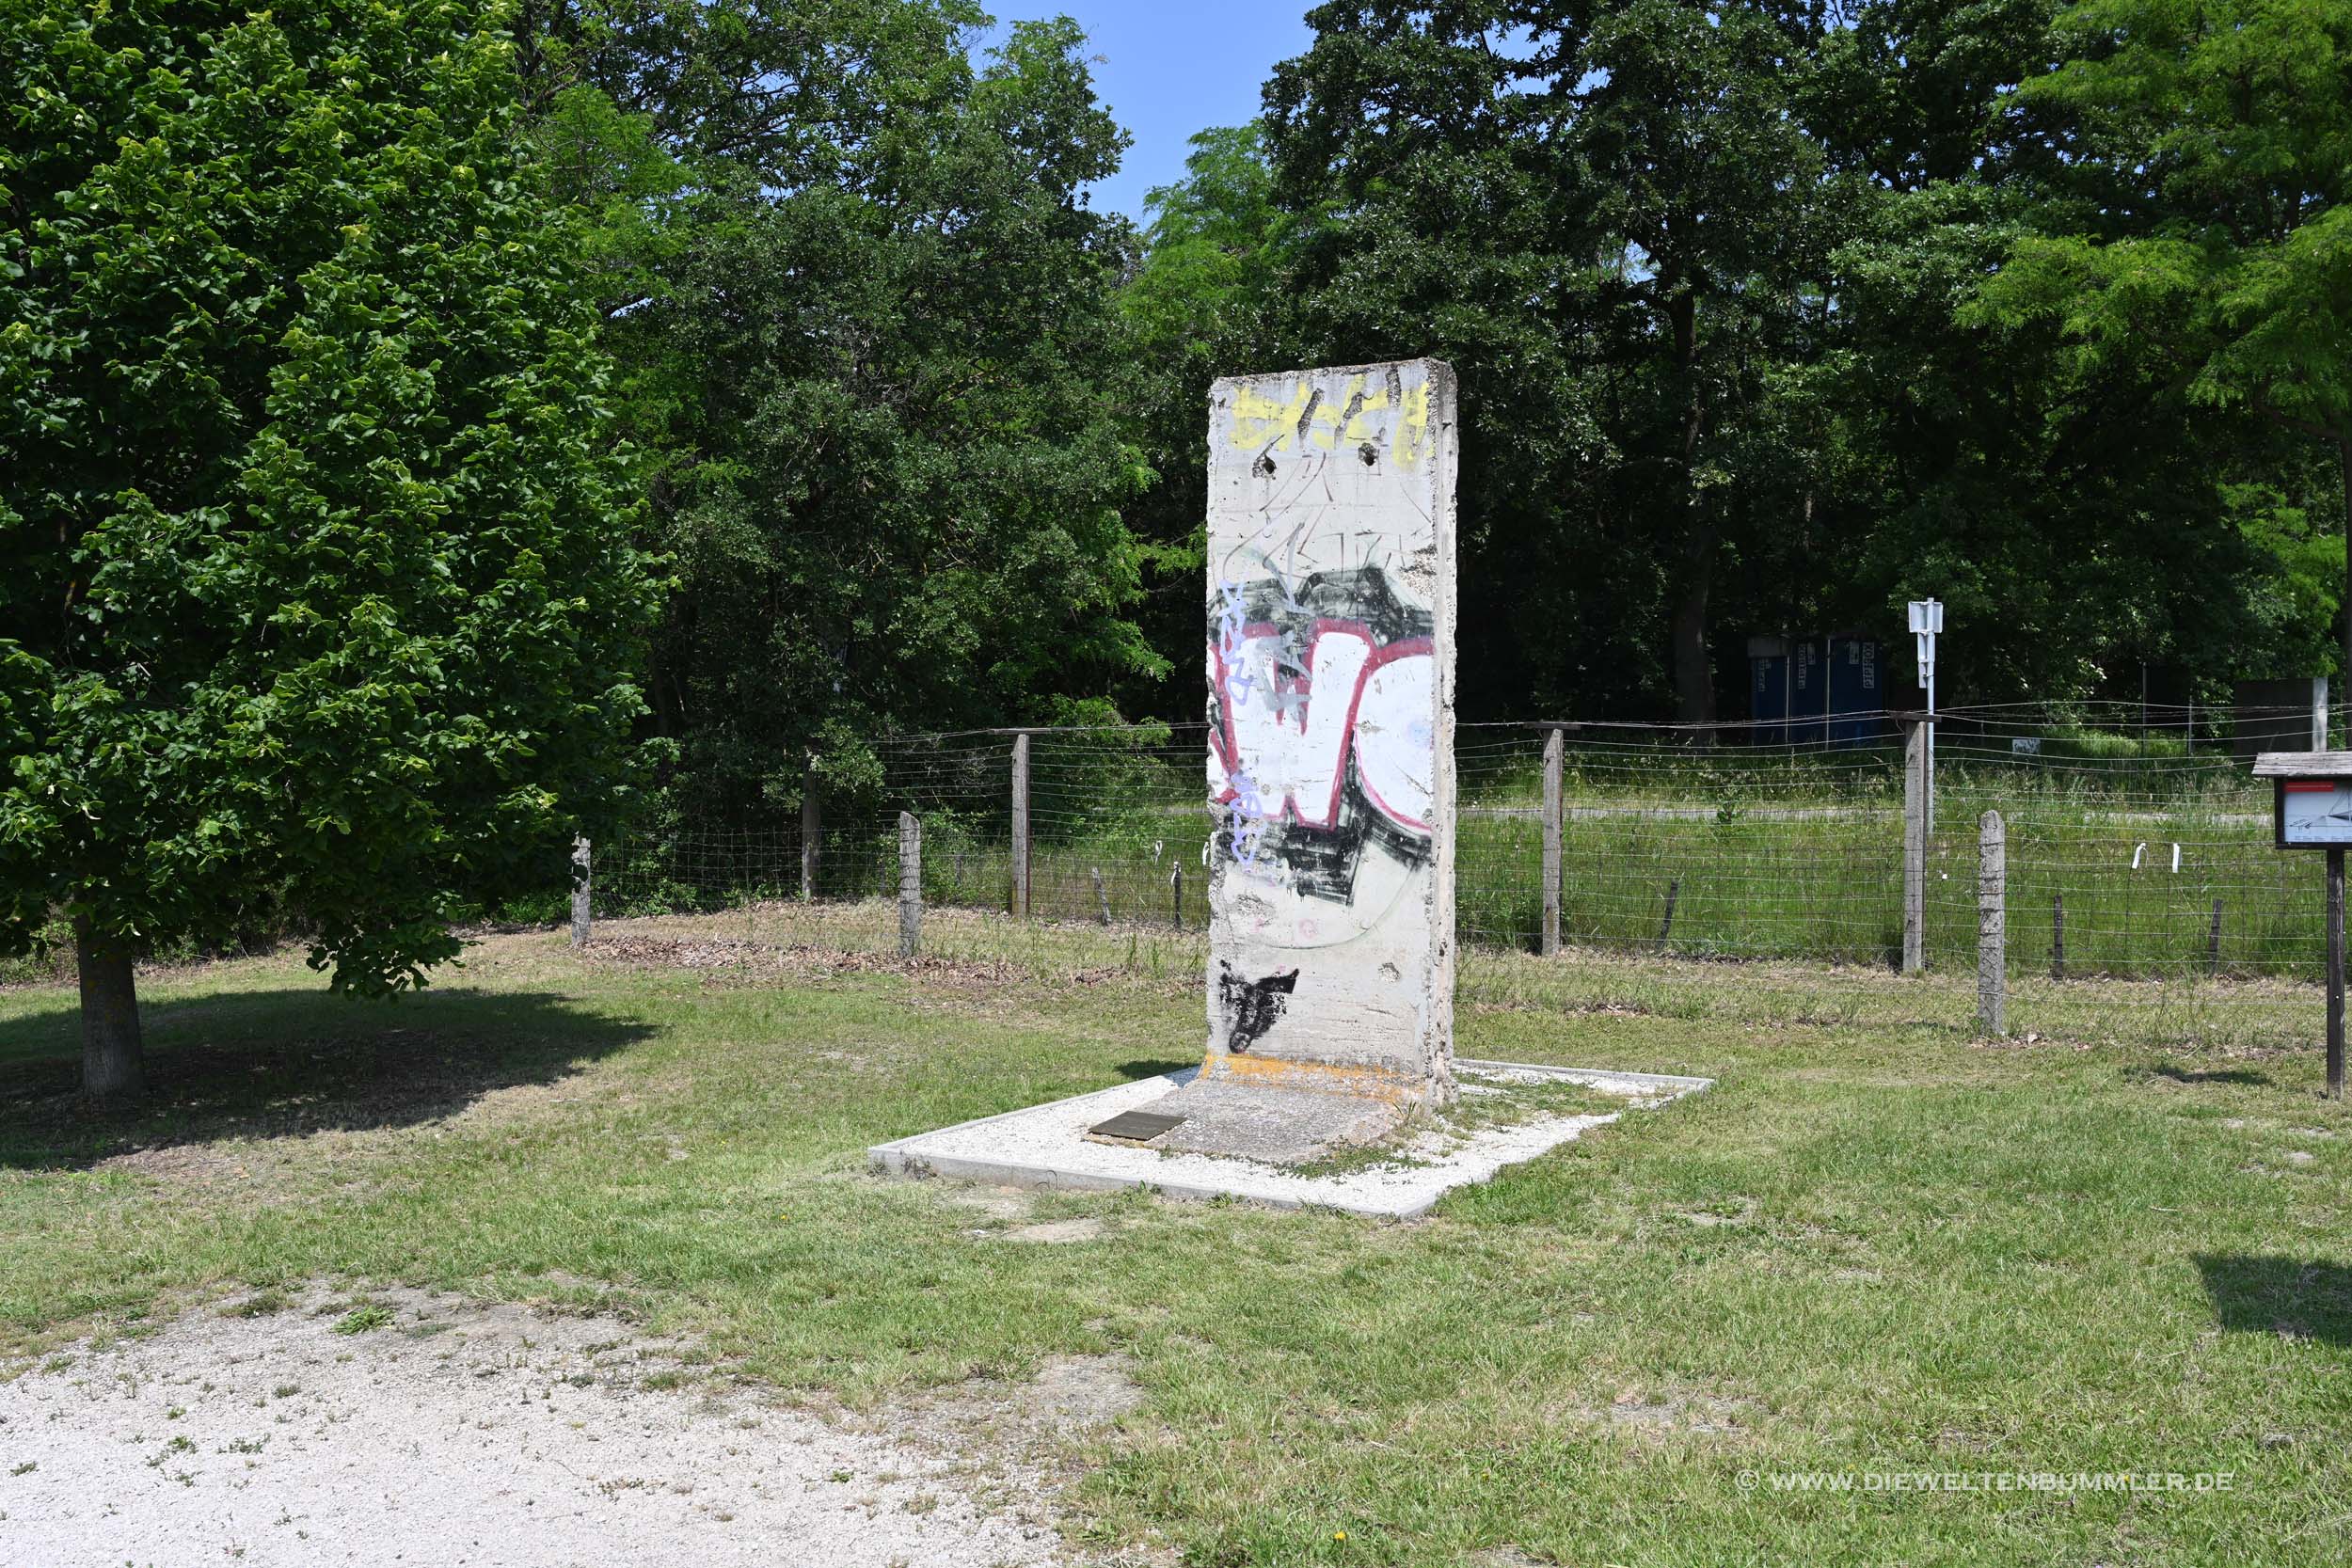 Teil der Berliner Mauer